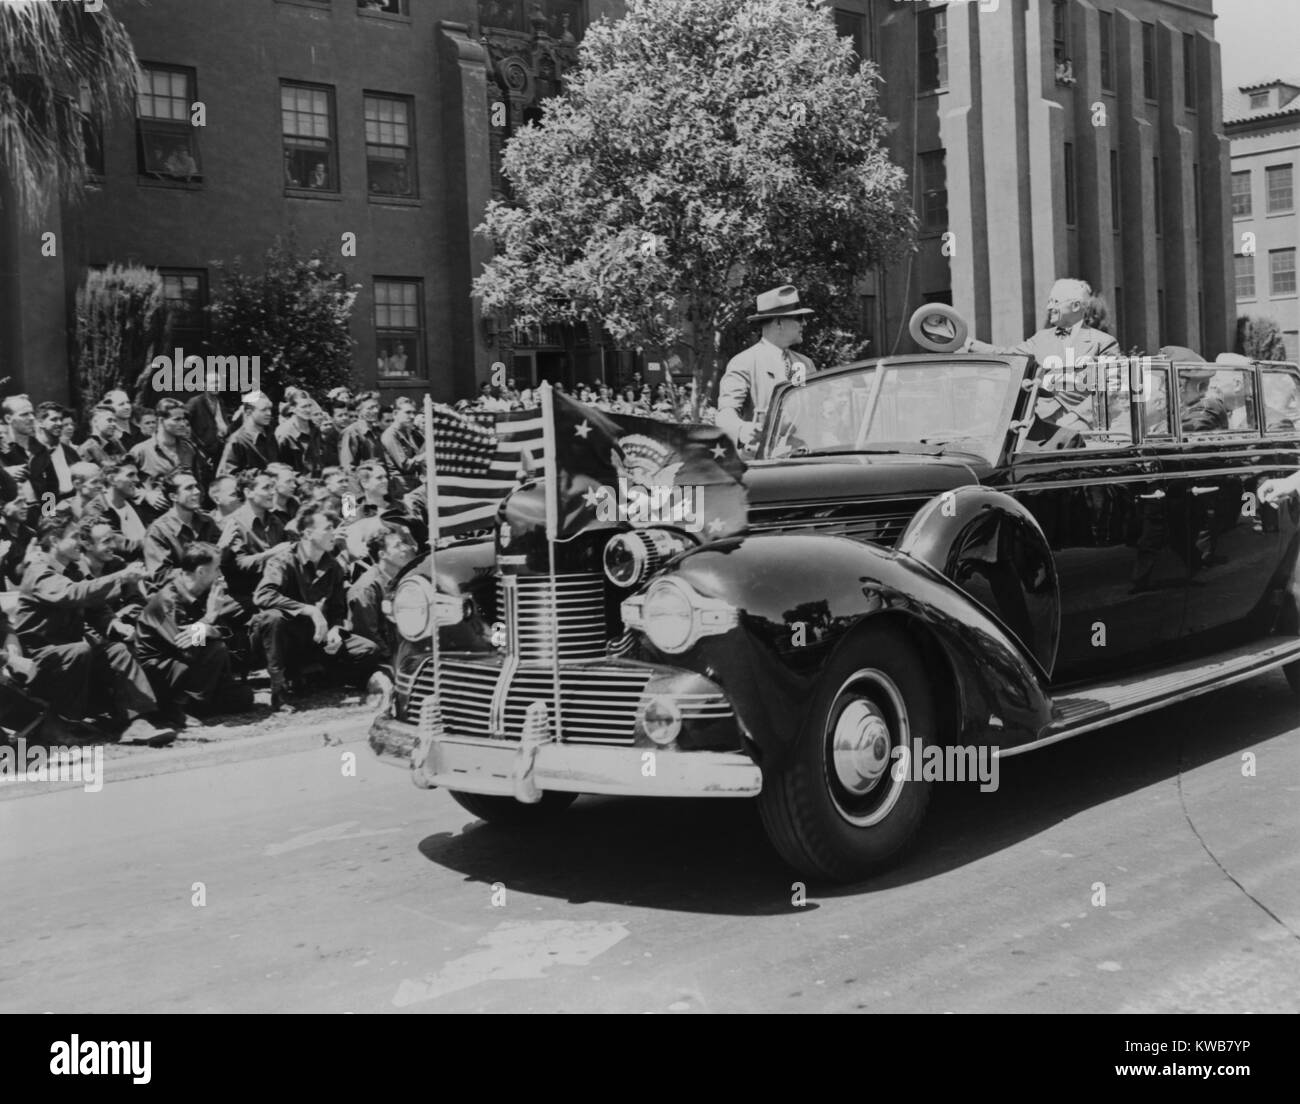 Le président Harry Truman signe aux soldats blessés au combat Pacifique. Sa limousine passe la pelouse de l'hôpital de Hamilton, près de San Rafael, en Californie. Truman a été à San Francisco la Charte des Nations Unies participant à des cérémonies de signature. Le 26 avril 1945. La Seconde Guerre mondiale 2. (BSLOC 2014 8 197) Banque D'Images